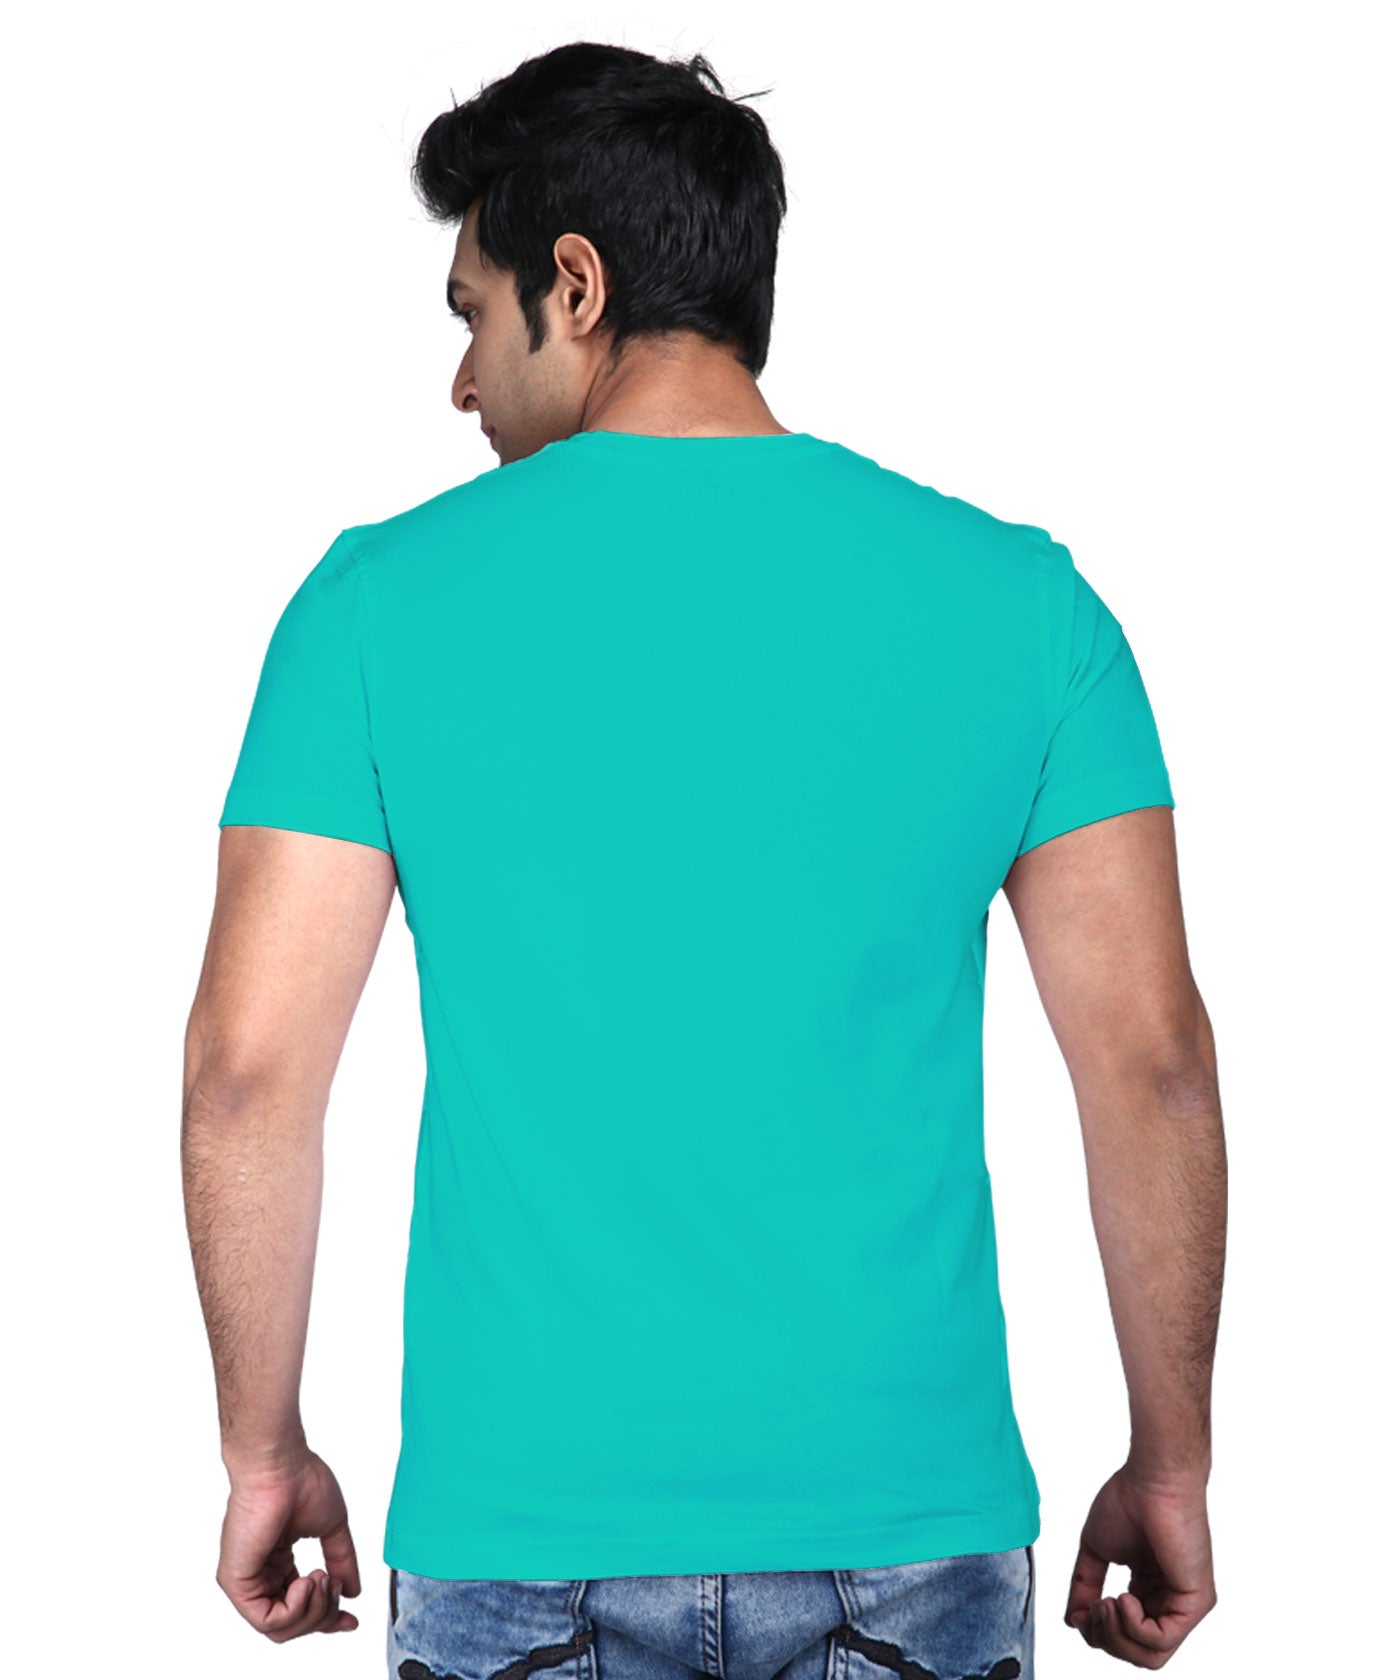 Tri Colour Ganesha - Premium Round Neck Cotton Tees for Men - Sea Green